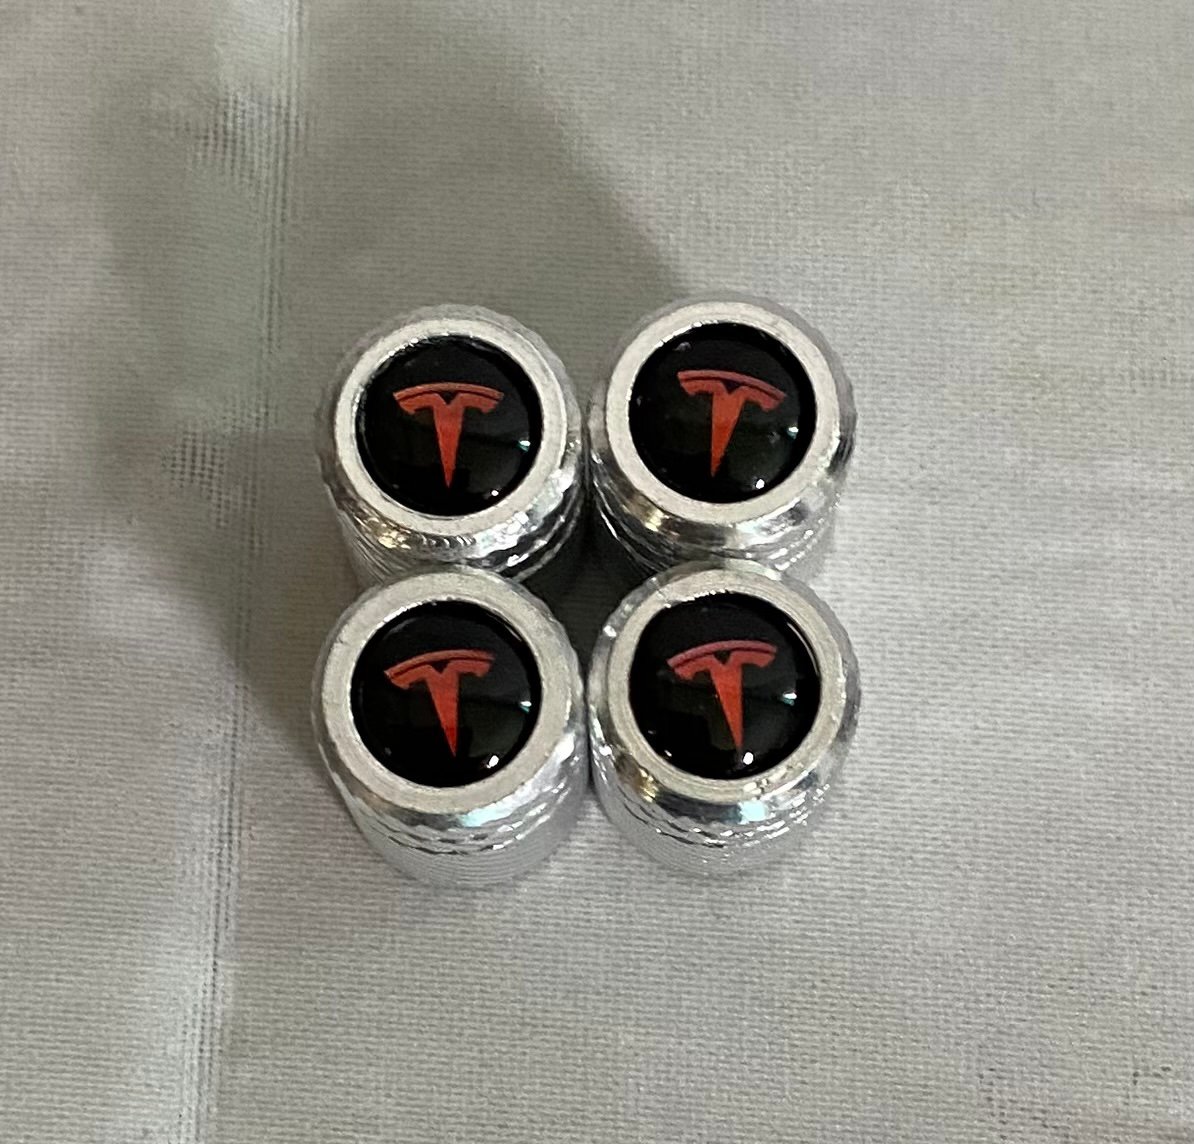 Stem caps for Tesla 7gZjw5DtE